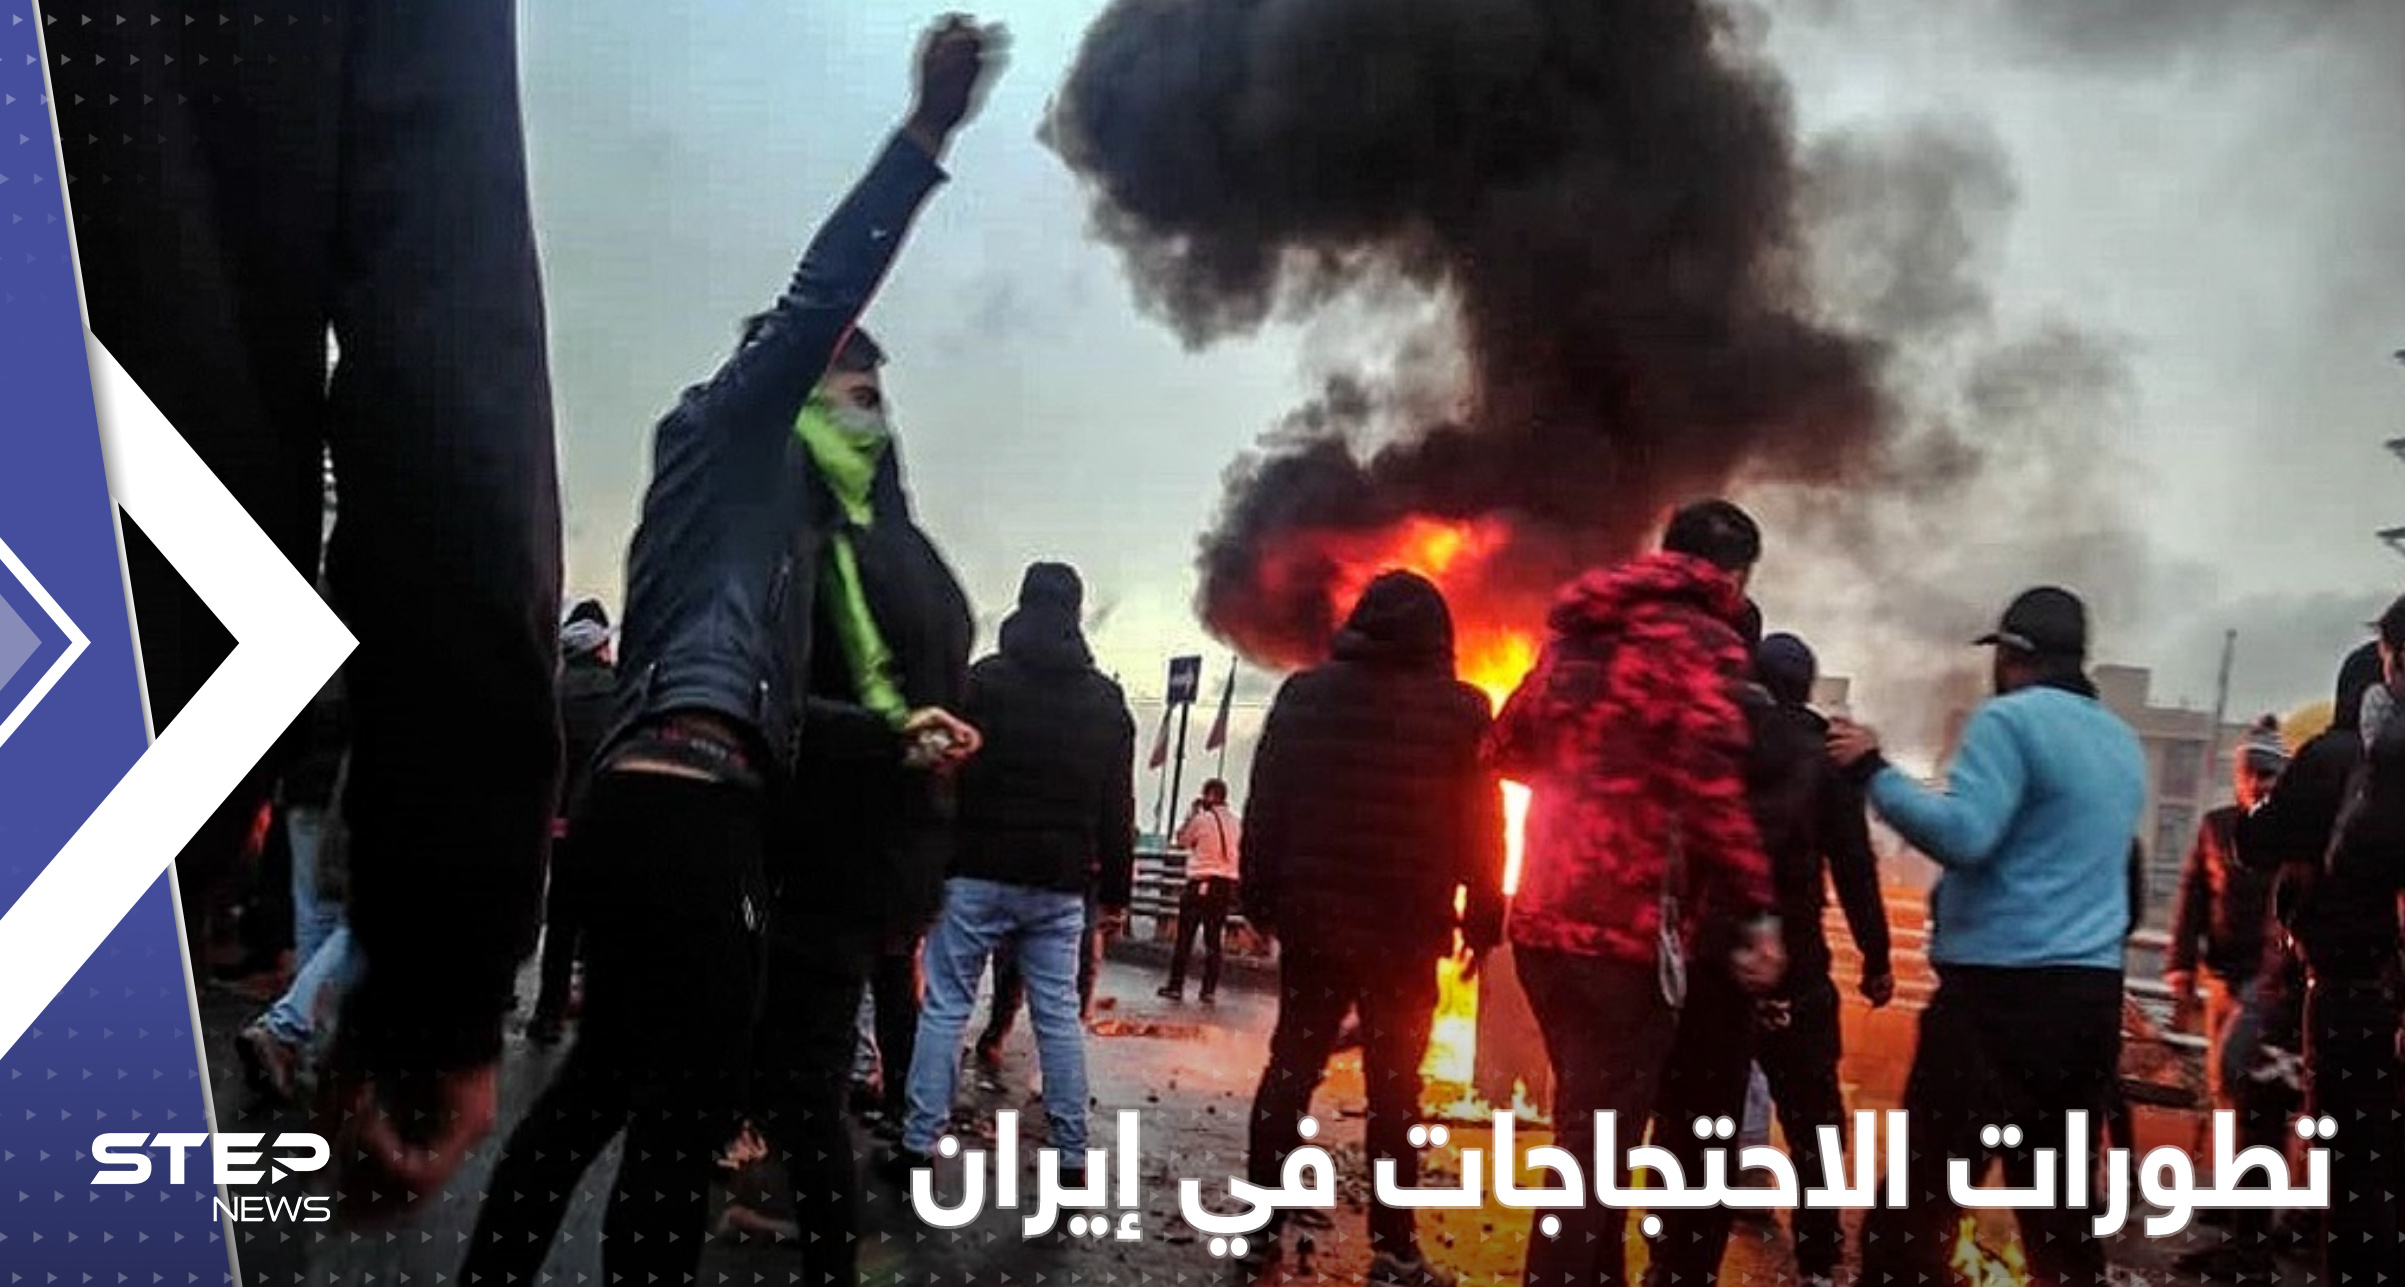 الأهواز تنضم إلى احتجاجات إيران.. "القتل أو الاعتقال" مصير المتظاهرين وأجانب بقبضة الأمن 